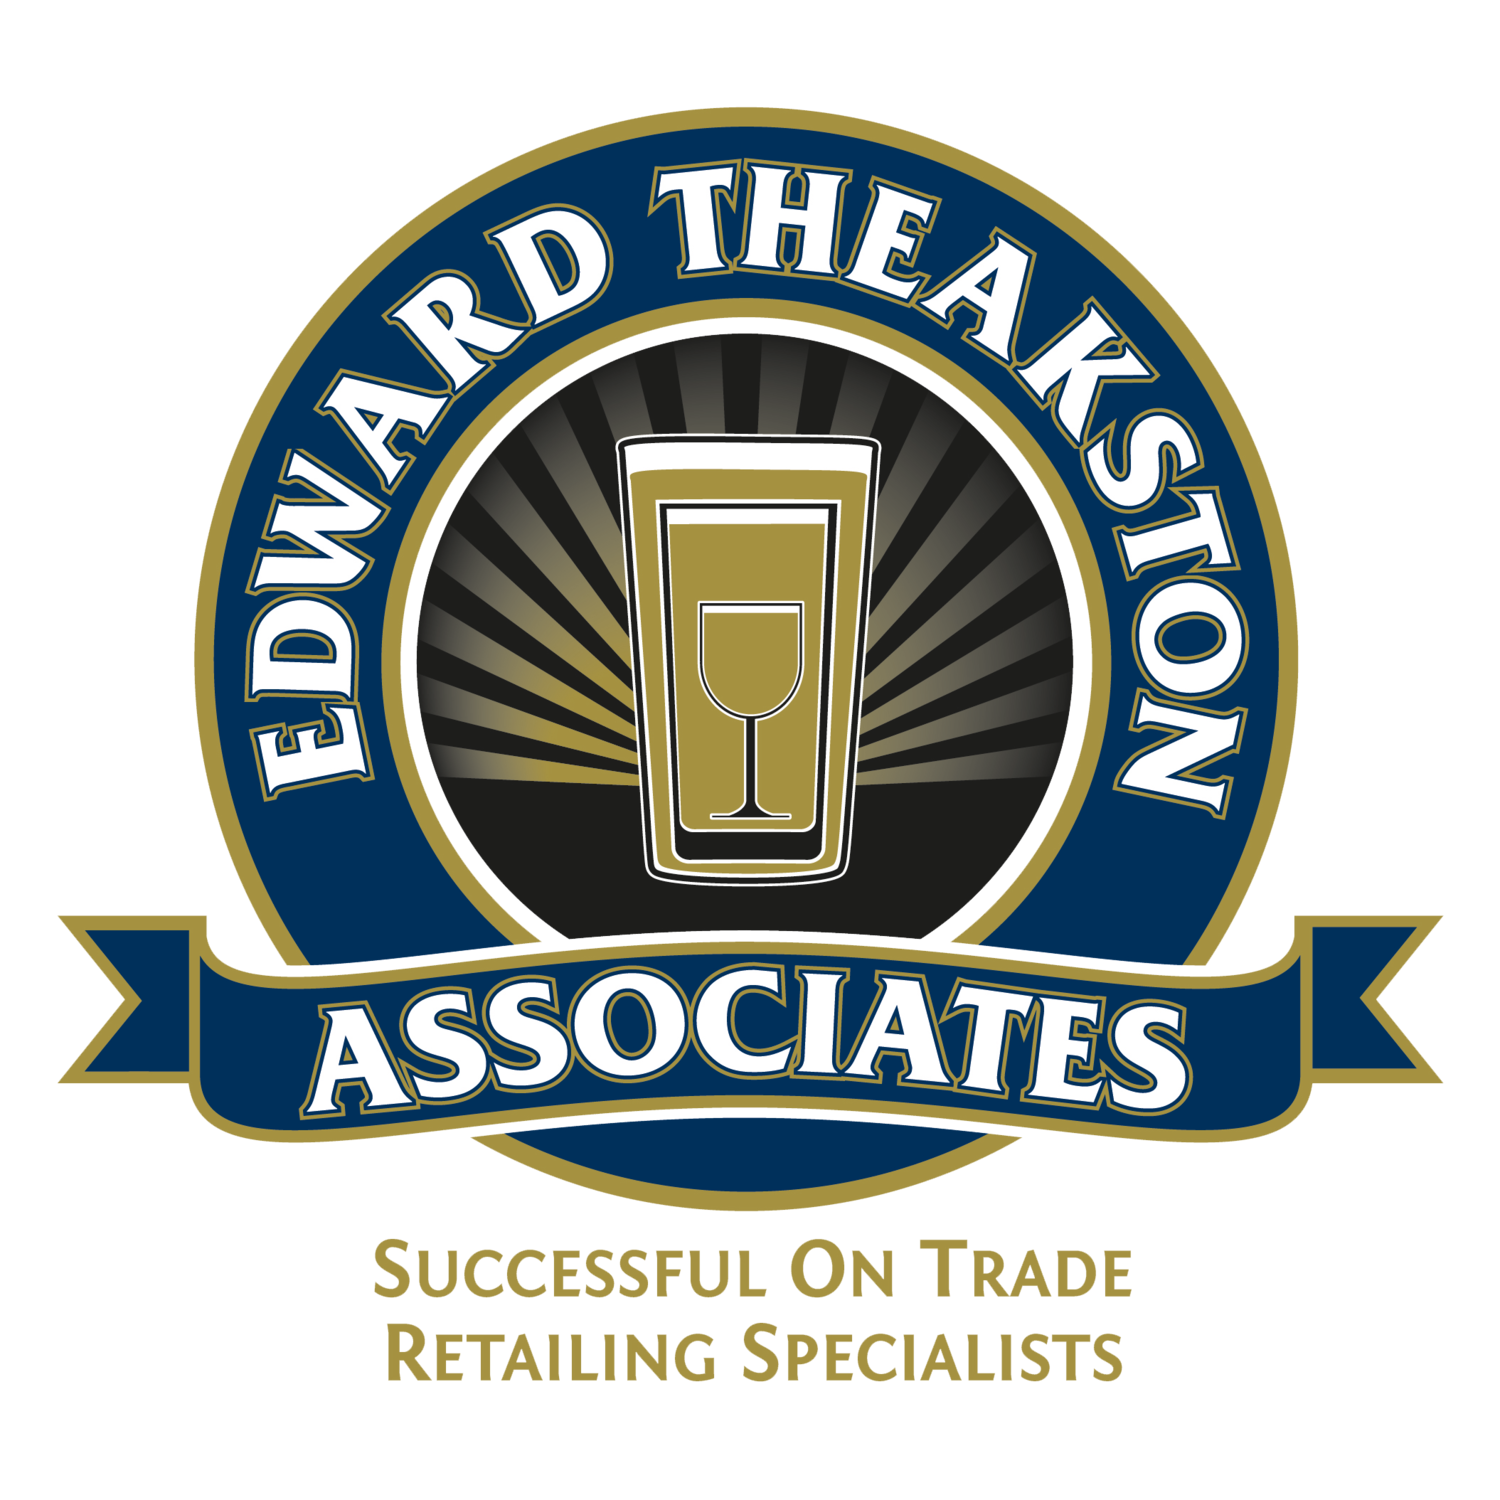 Edward Theakston Associates